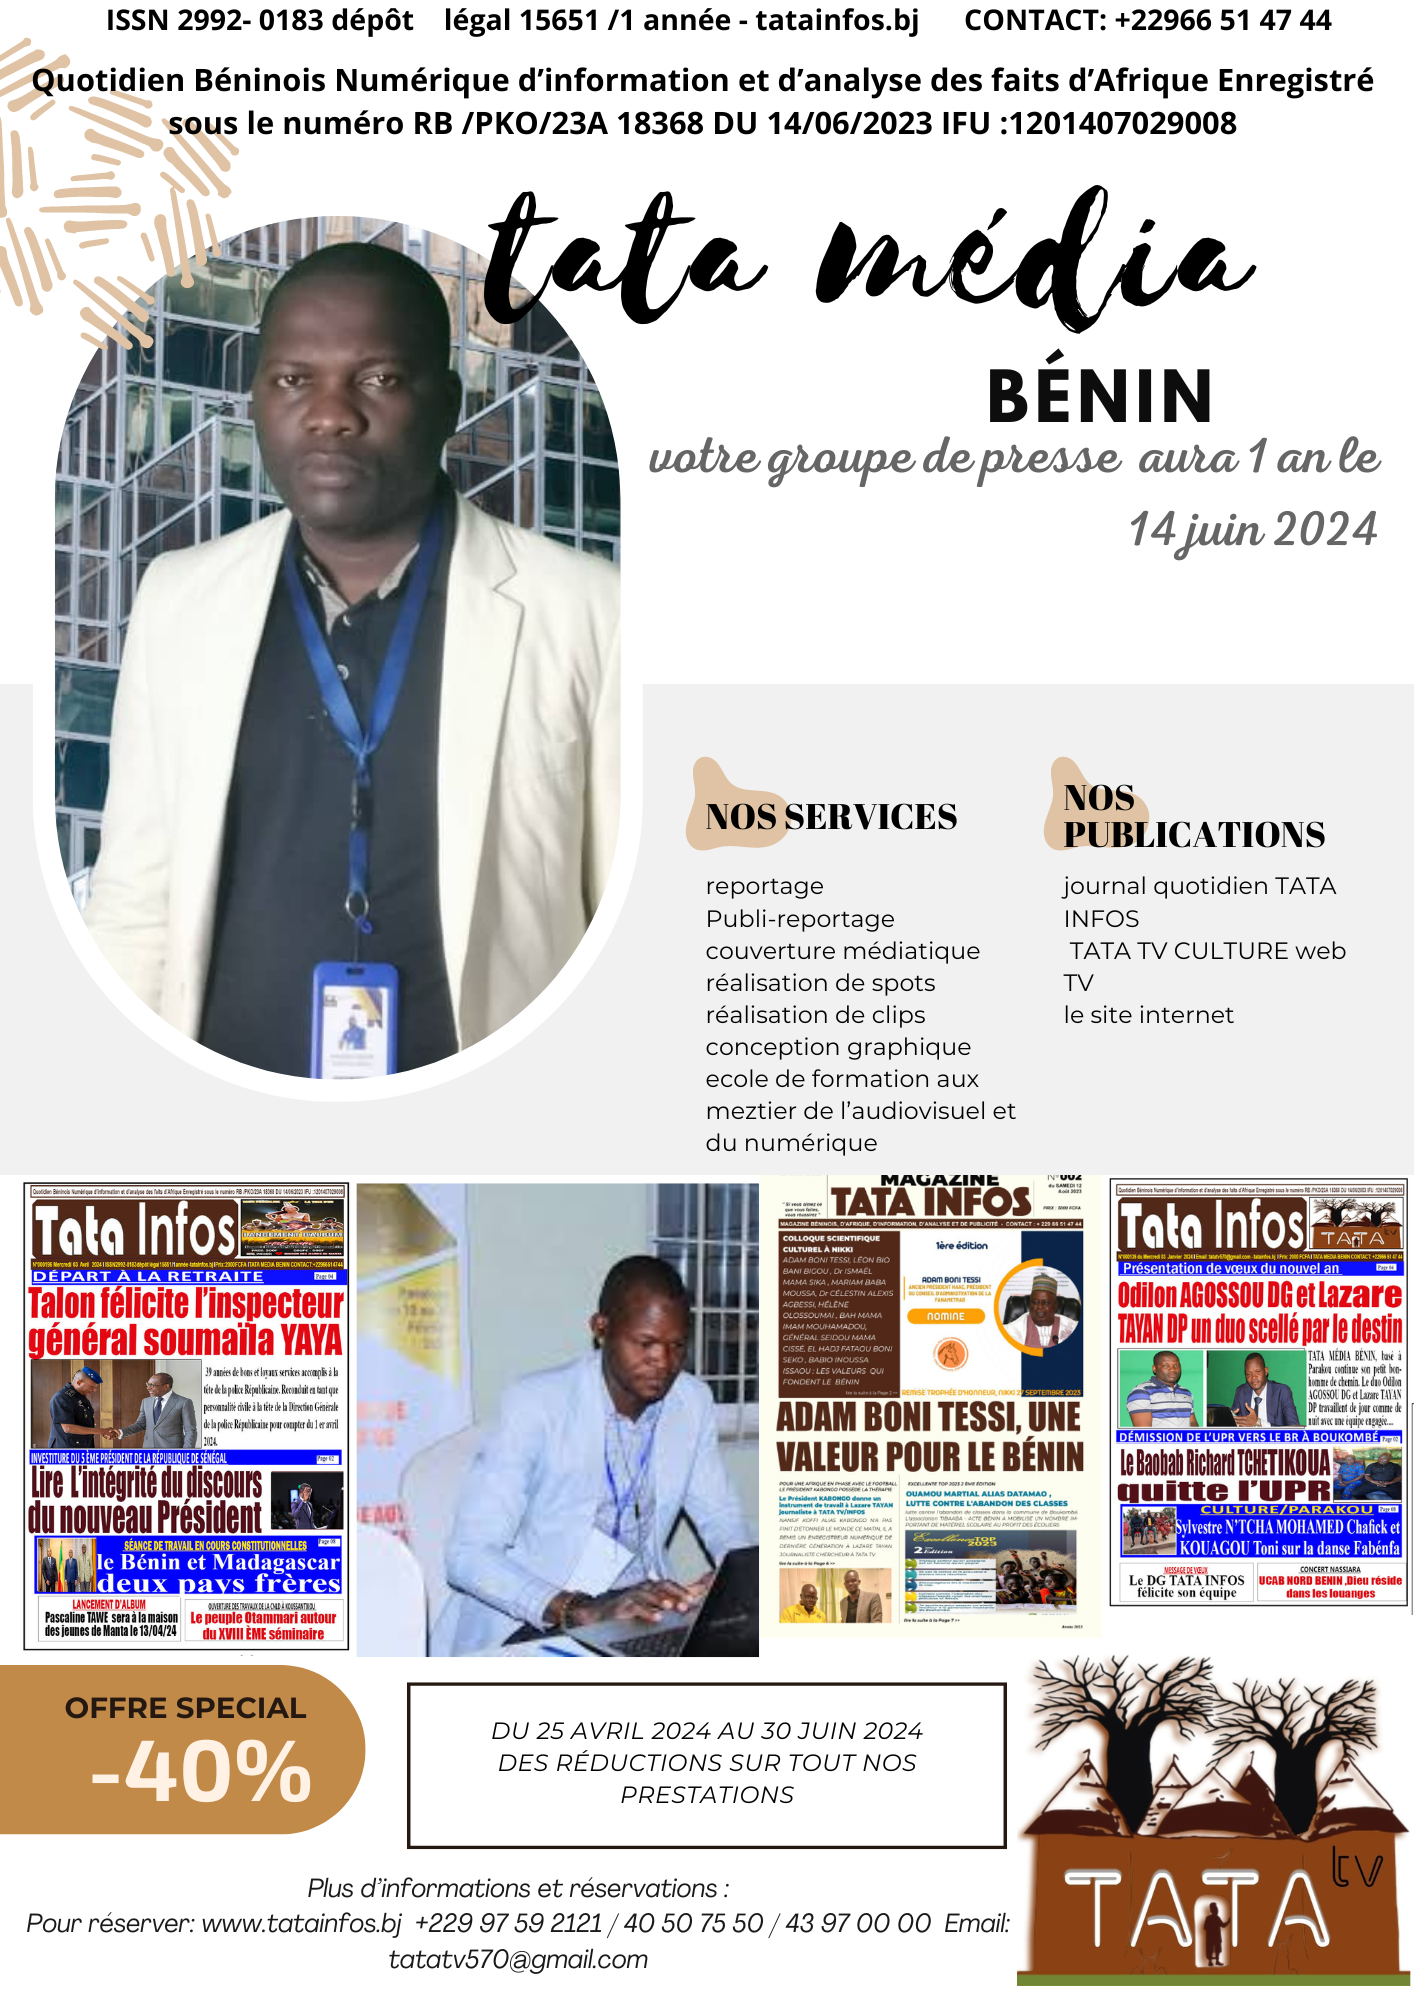 les journées porte ouverte au groupe de presse TATA Média Bénin